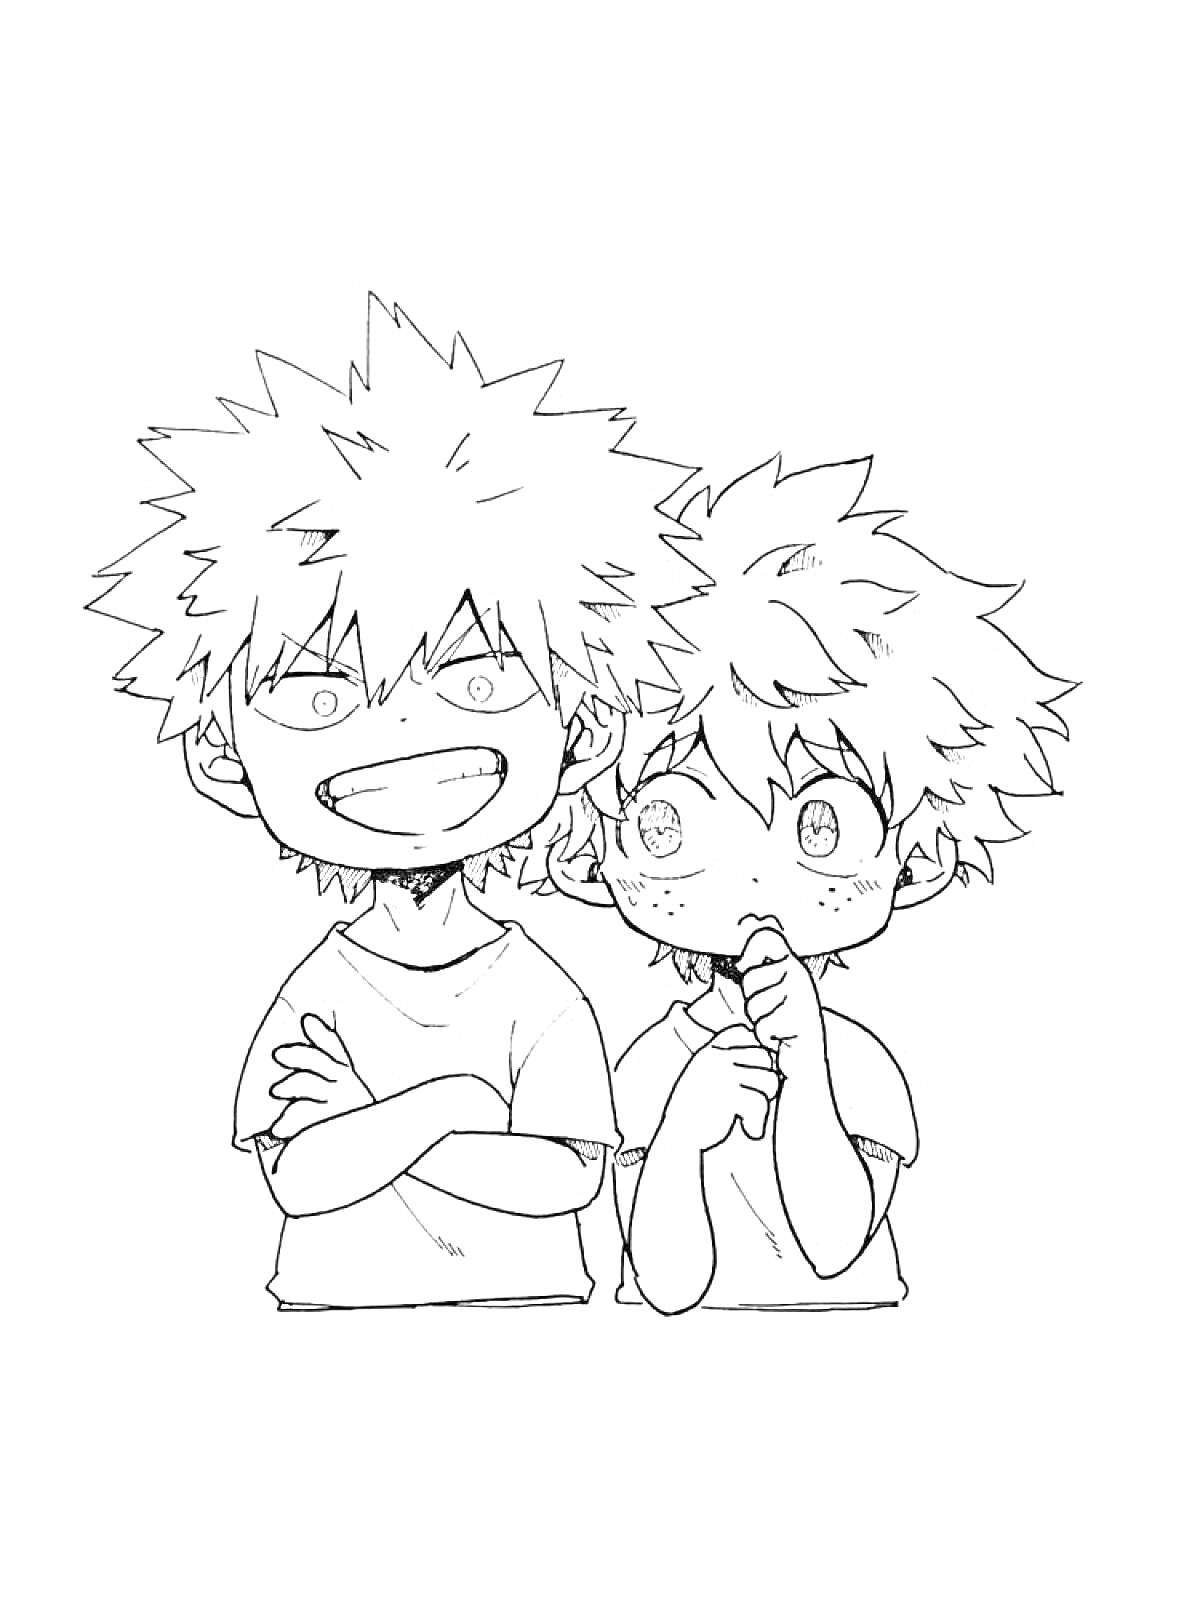 Два мальчика с колючими волосами в футболках, один улыбающийся, другой задумчивый, 